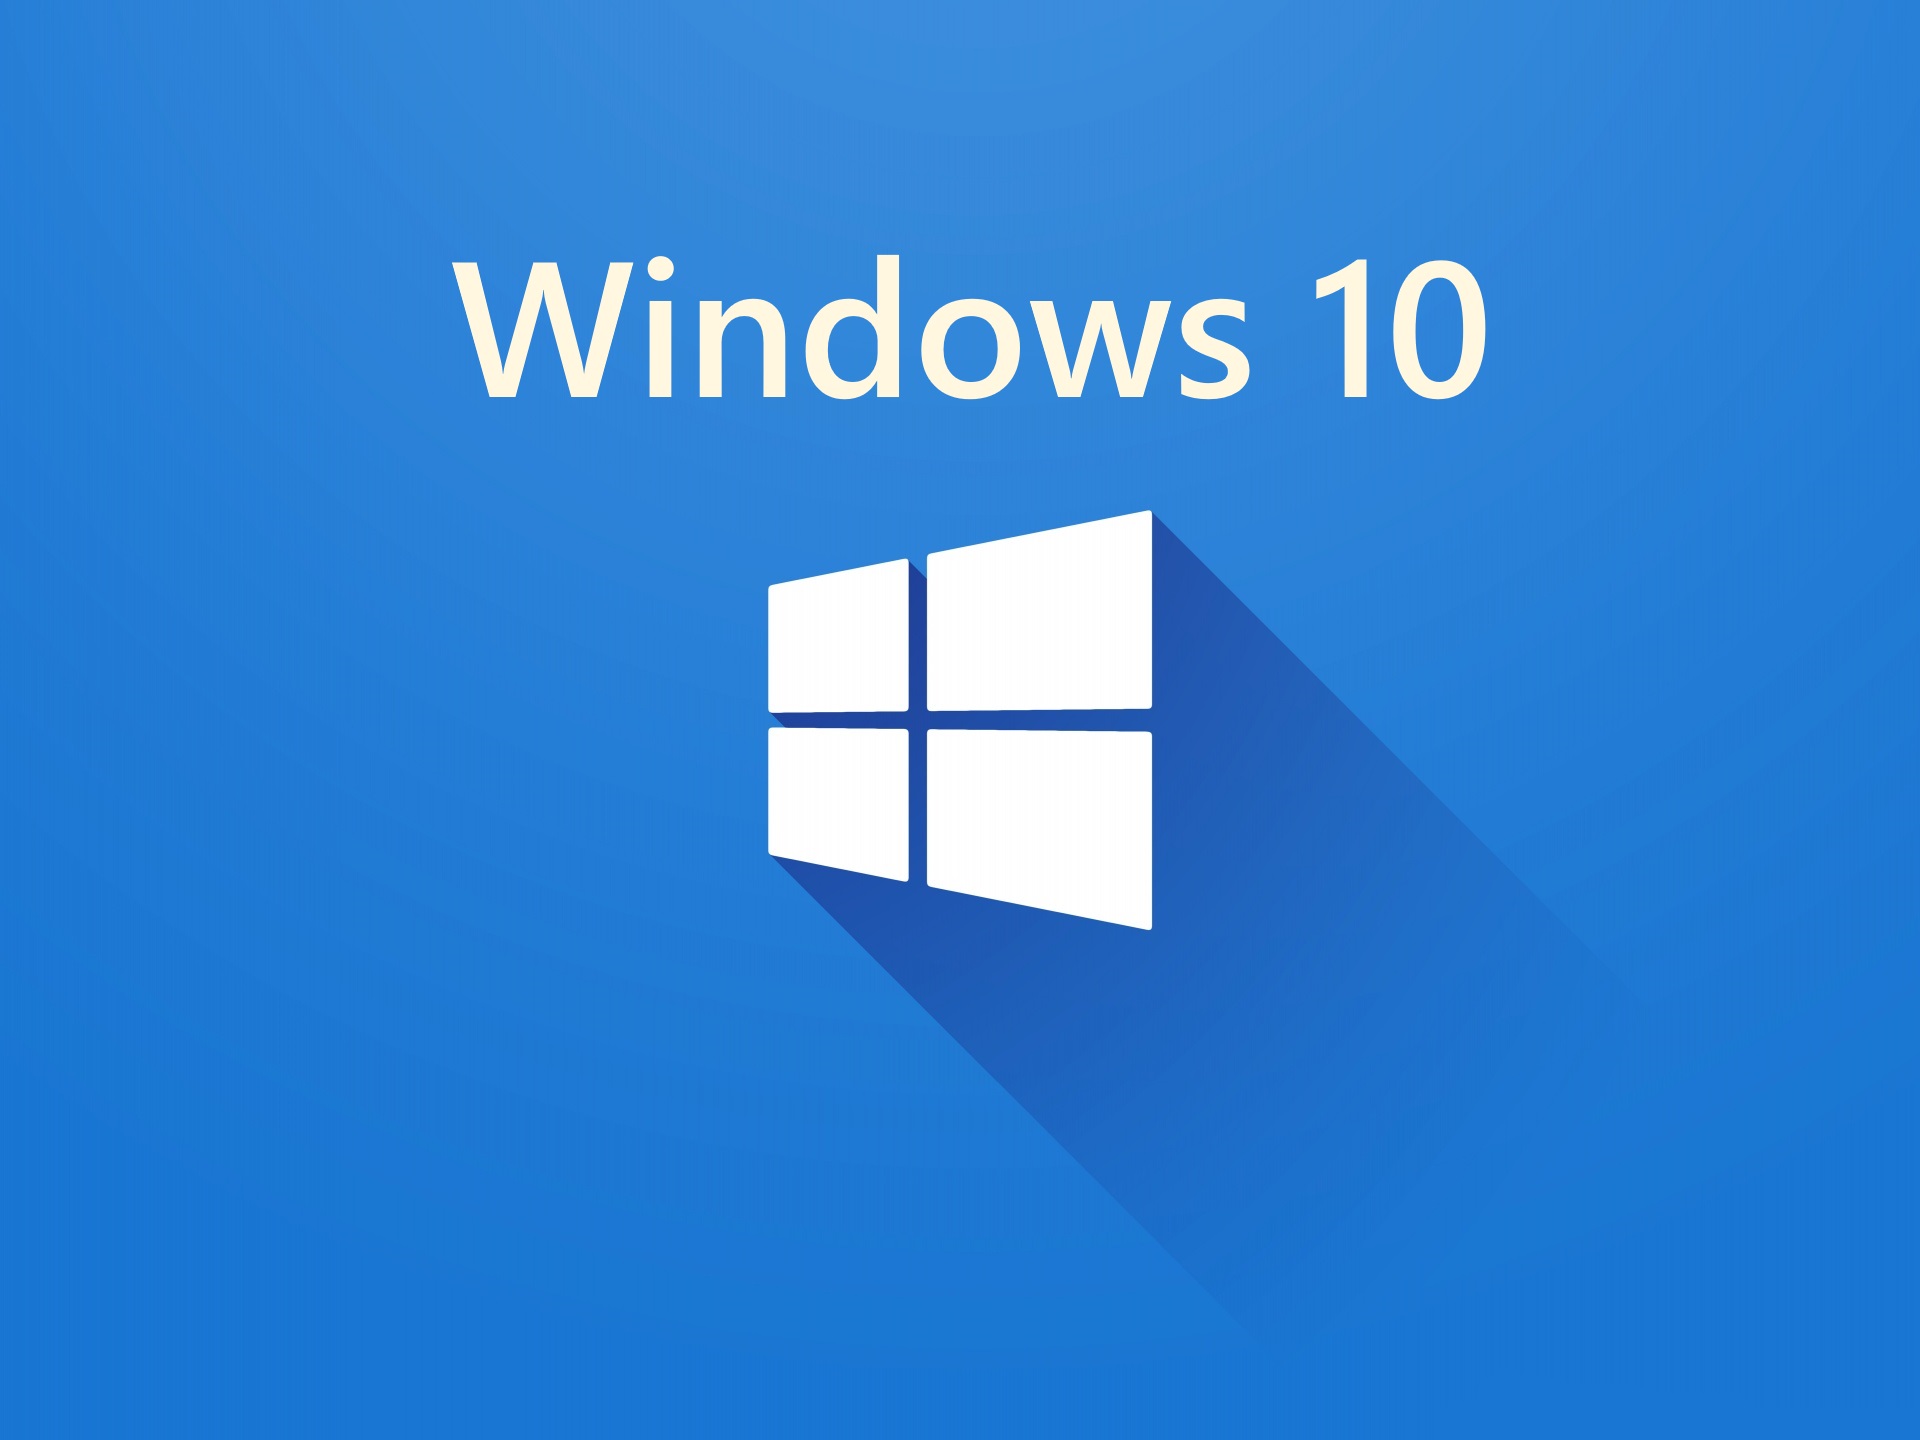 Riattivare Windows 10 dopo aver cambiato scheda madre o altro hardware 1920x1440